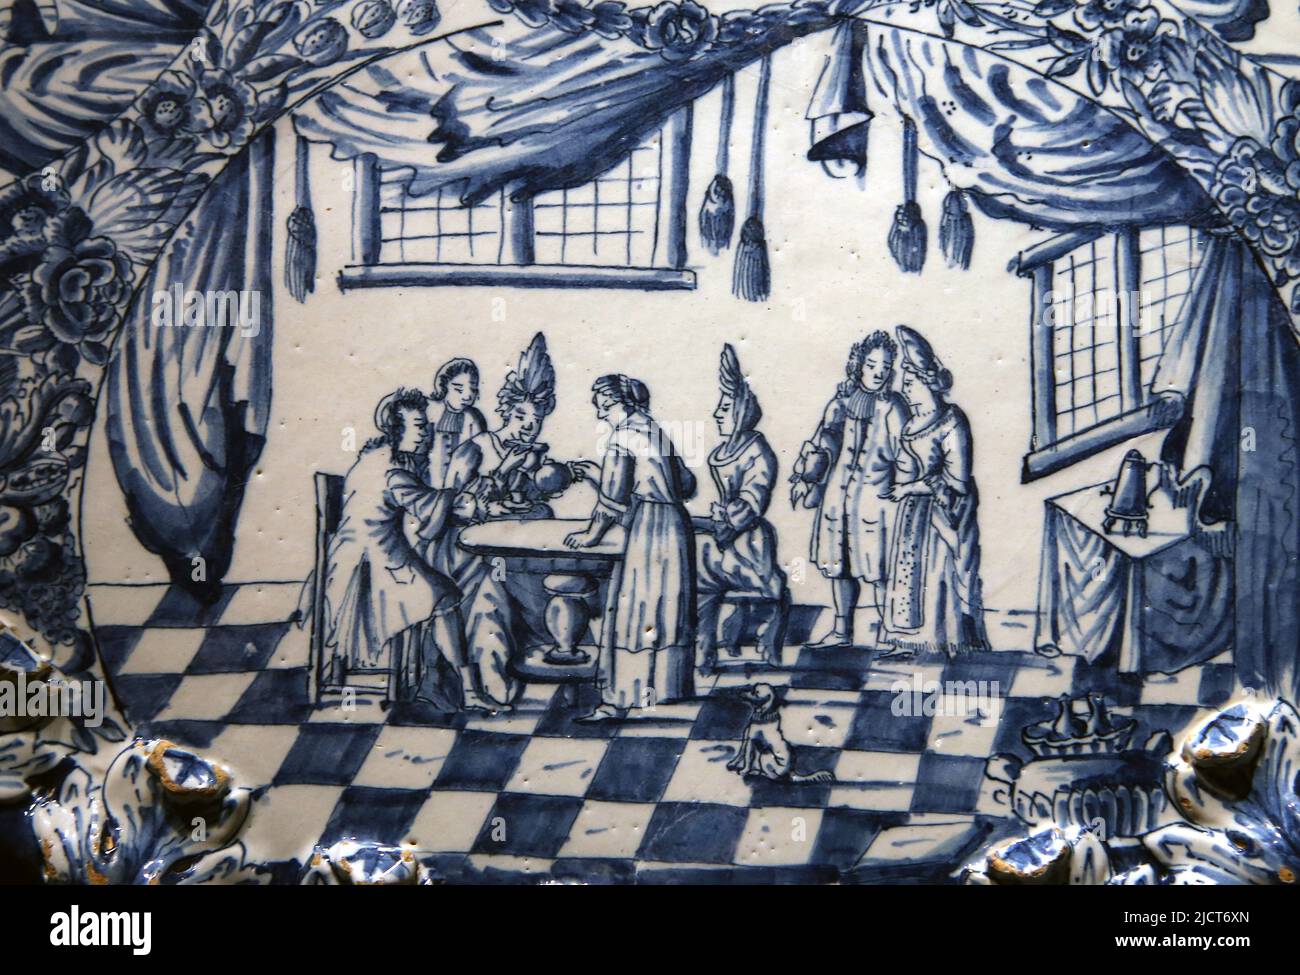 Delfware (terracotta glassata) decorato con scena di un incontro aristocratico. Rijksmuseum. Amsterdam. Paesi Bassi.e. Foto Stock